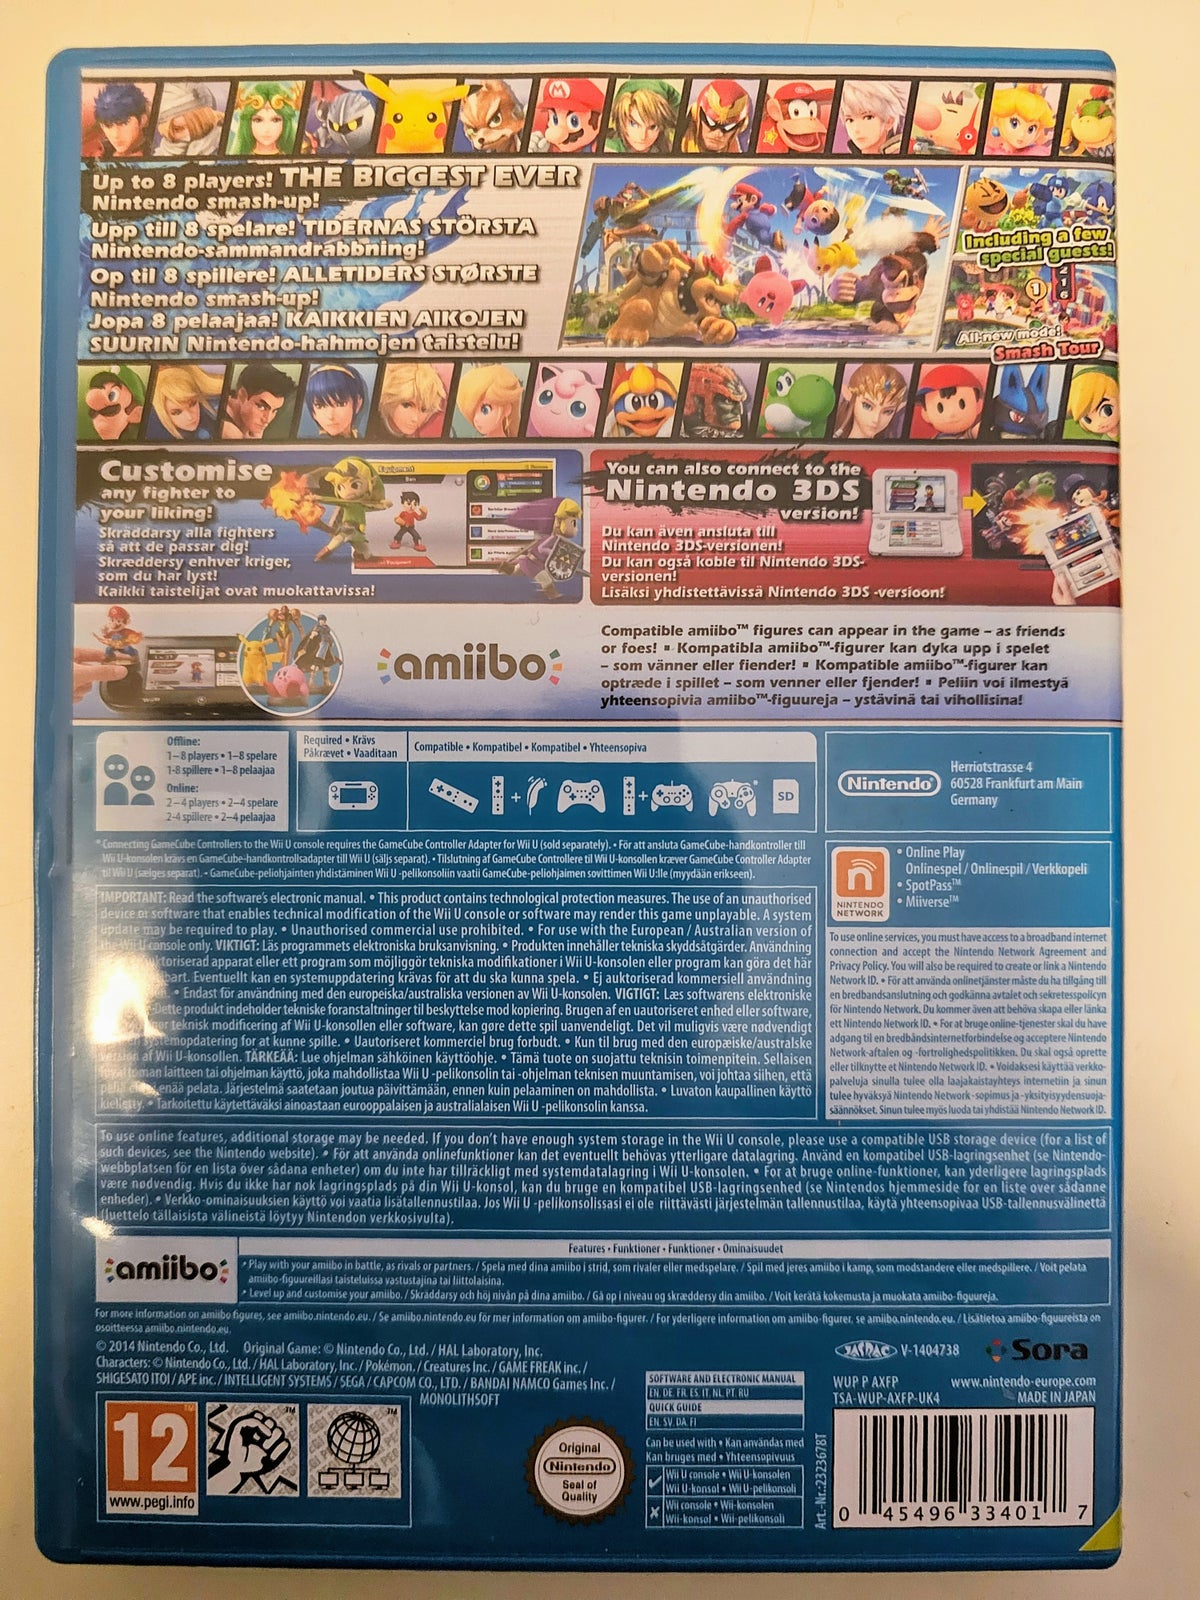 Super Smash Bros for, Nintendo Wii U